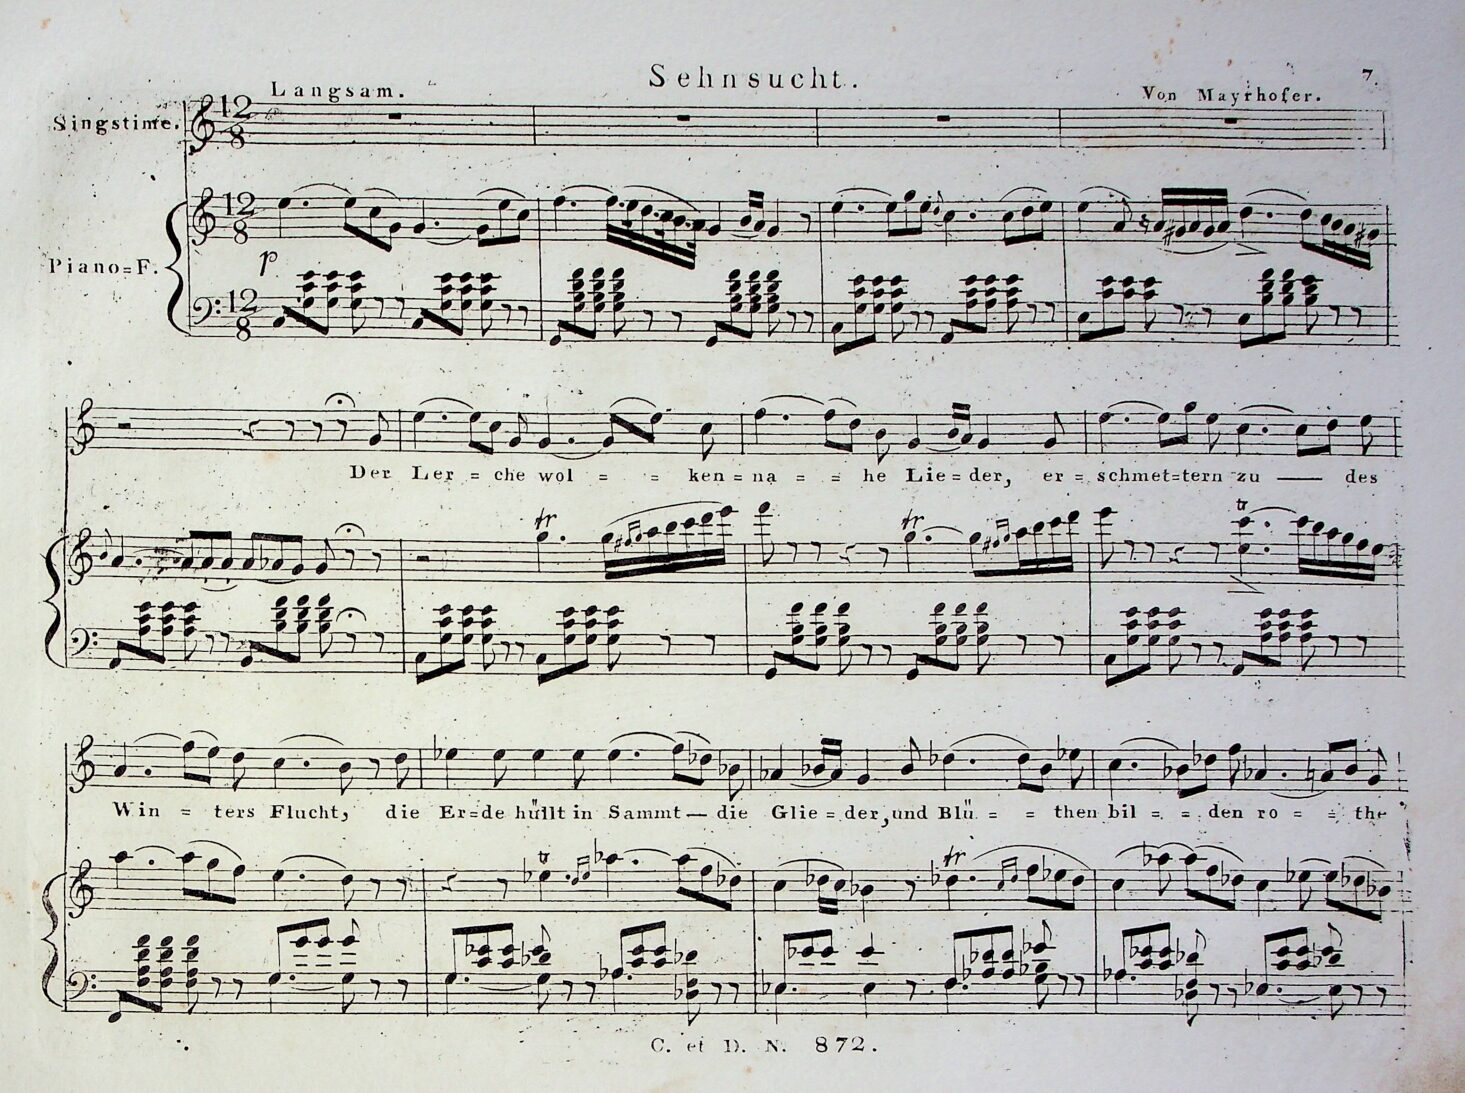 Schubert, F. - "Sehnsucht" D636, 1st edition